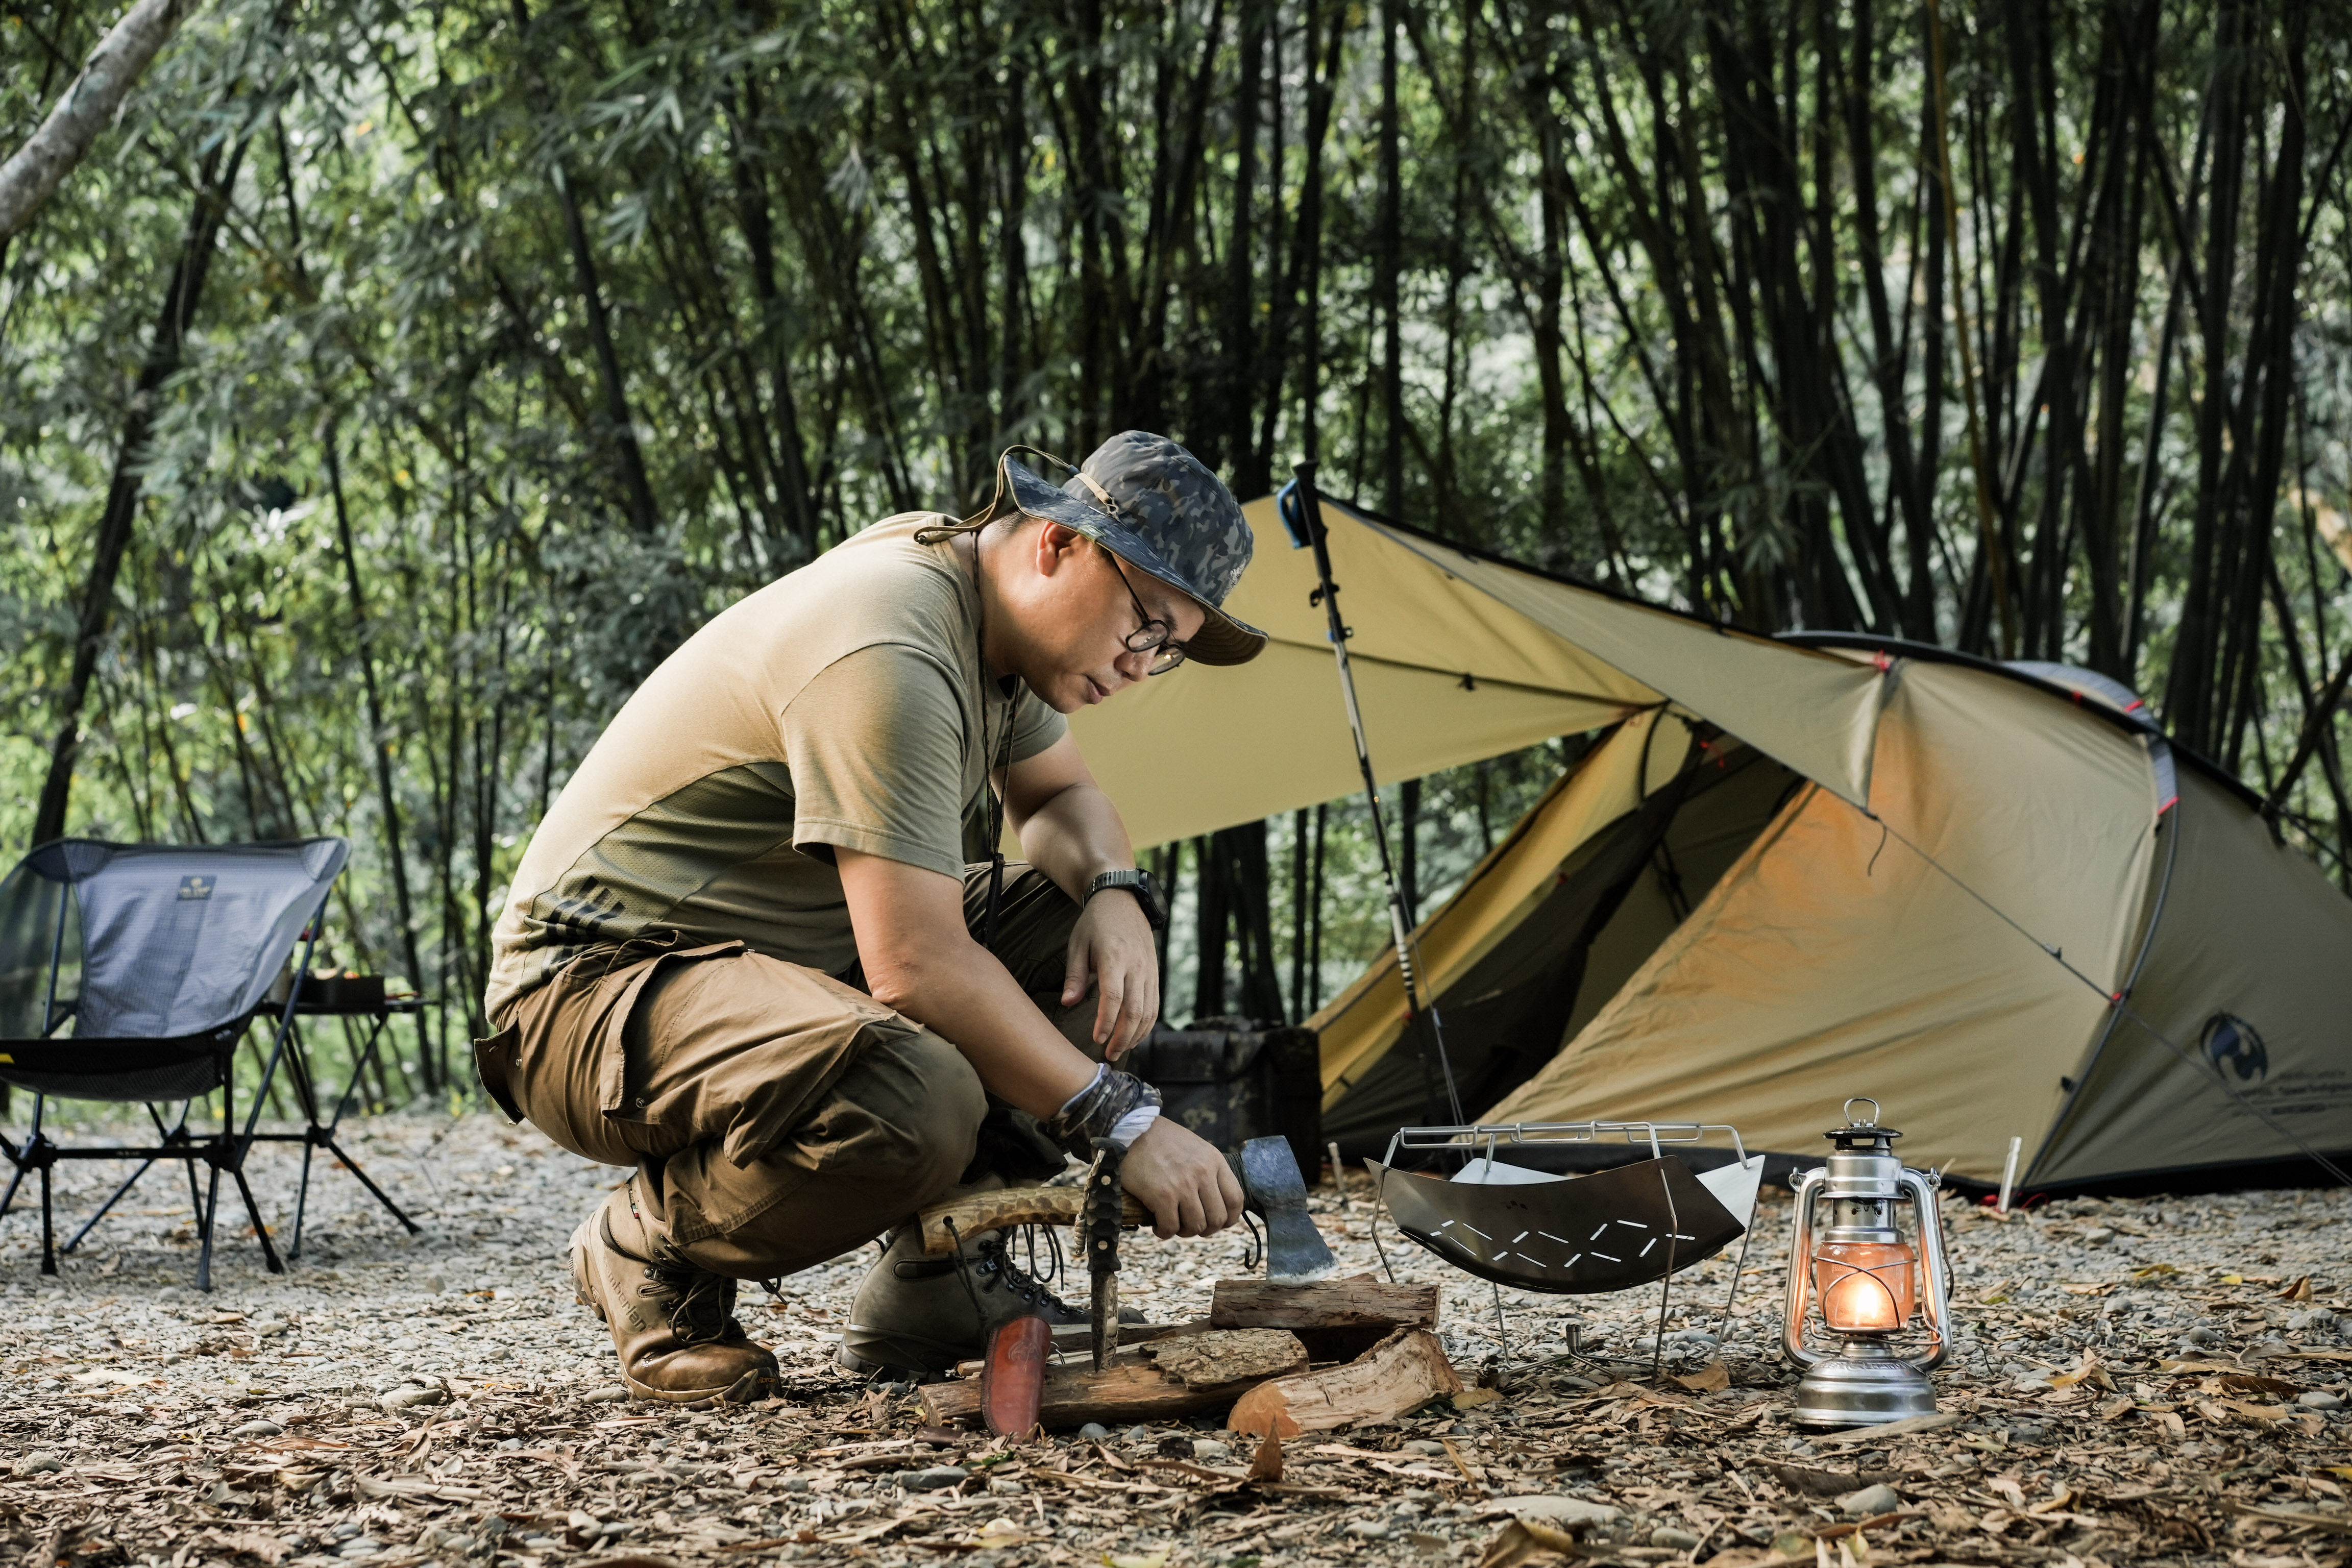 露營達人「Campfire 營火部落」打造直上玩家裝備品牌